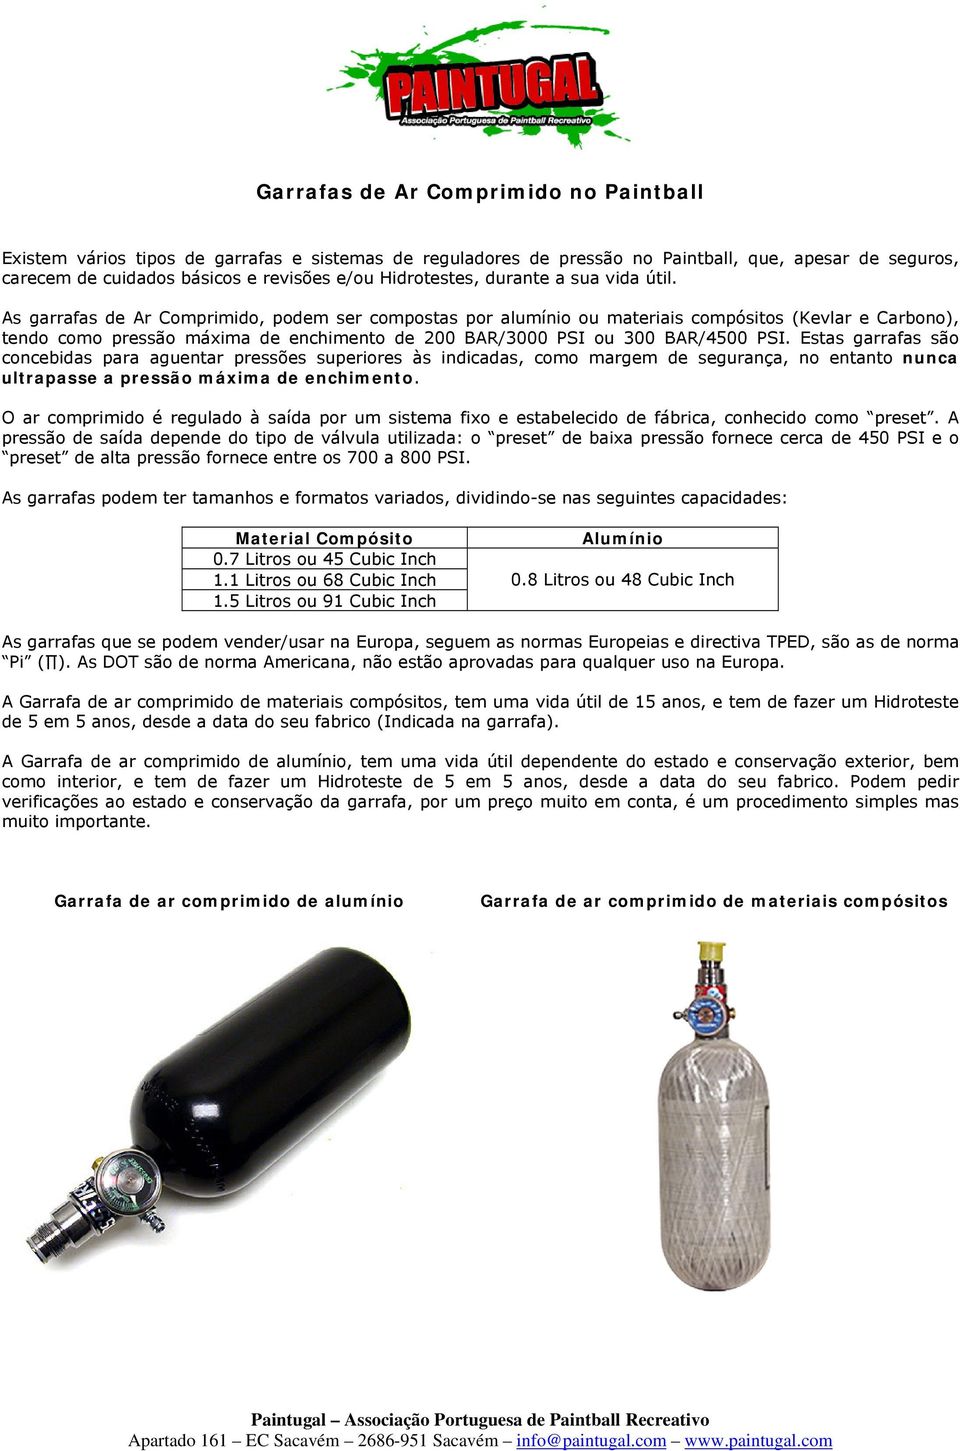 As garrafas de Ar Comprimido, podem ser compostas por alumínio ou materiais compósitos (Kevlar e Carbono), tendo como pressão máxima de enchimento de 200 BAR/3000 PSI ou 300 BAR/4500 PSI.